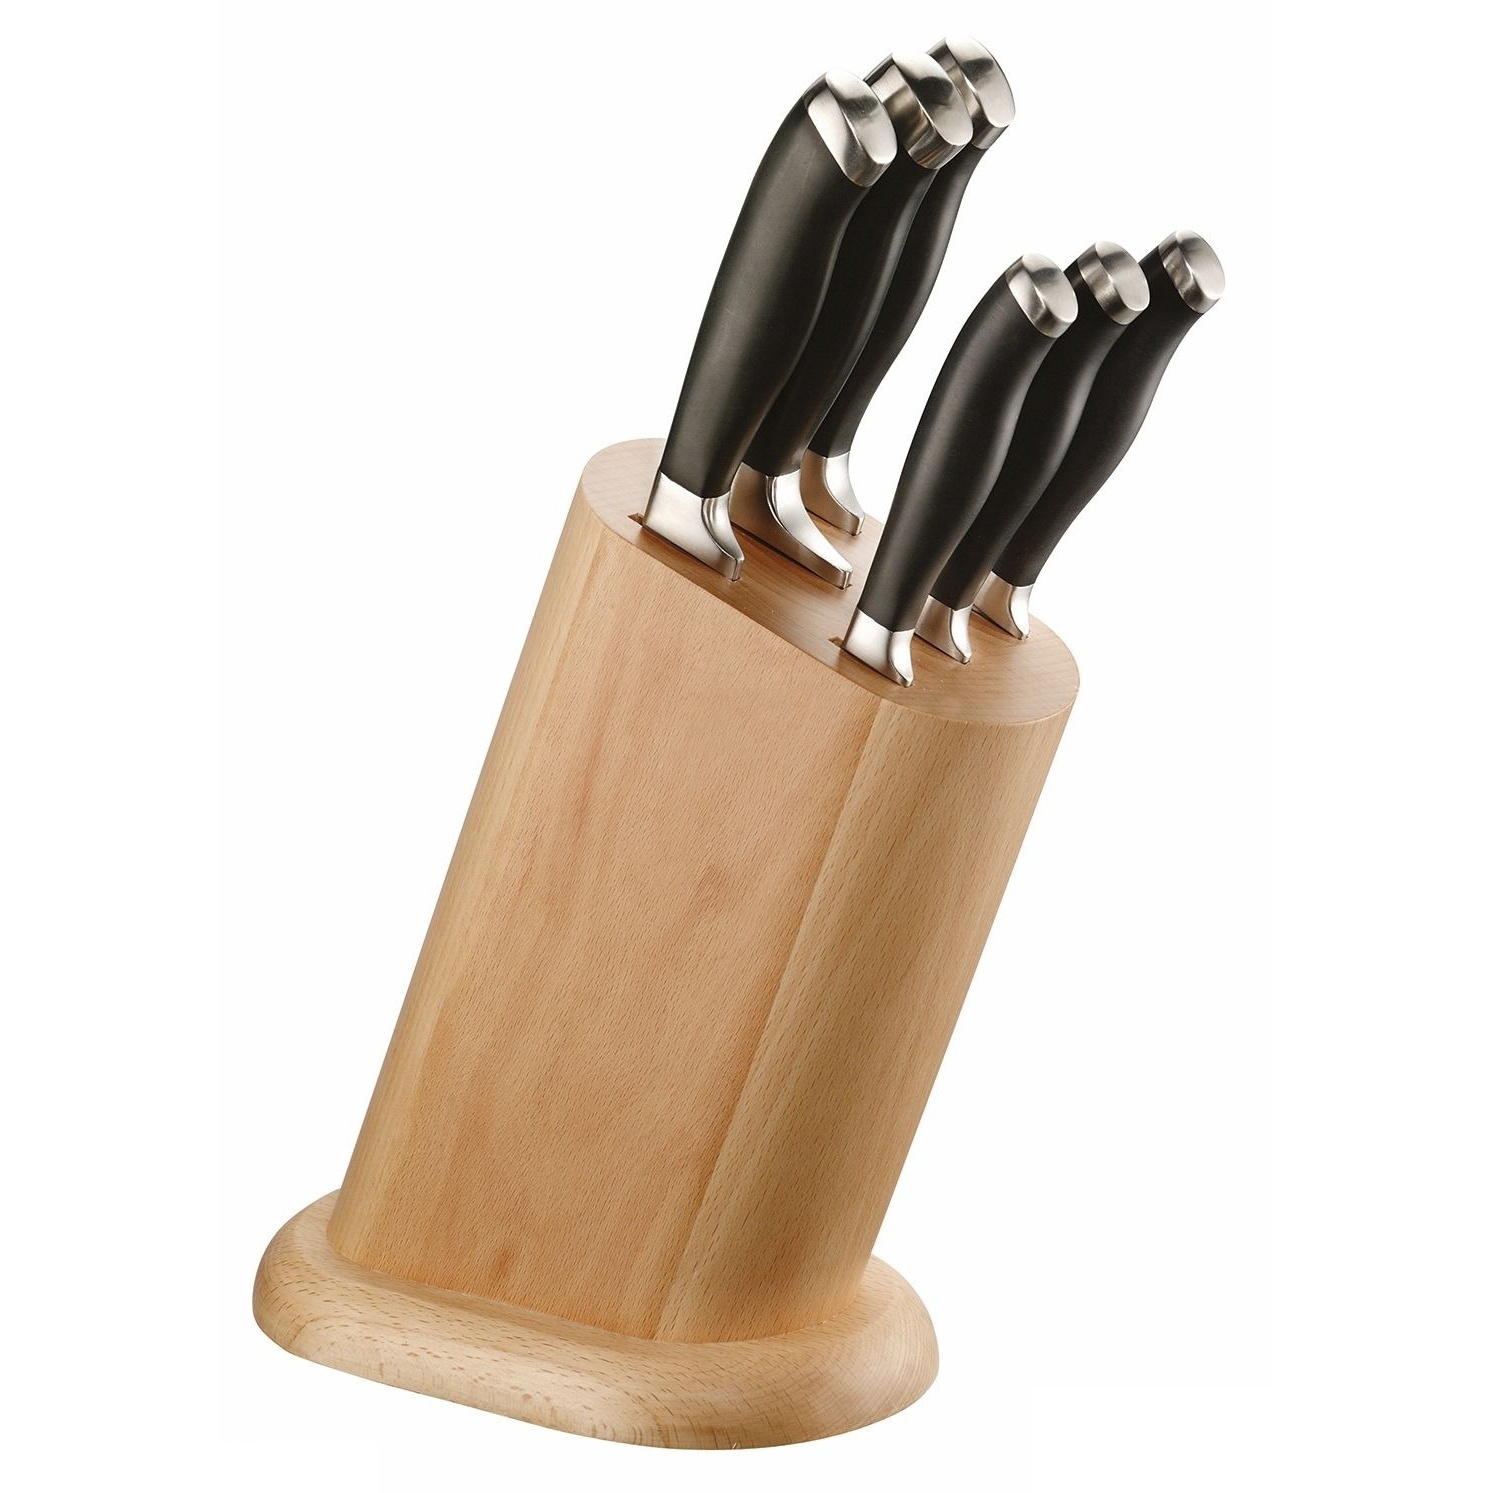 Набор ножей Pintinox 6 шт в деревянной подставке набор ножей на деревянной подставке 6 предметов